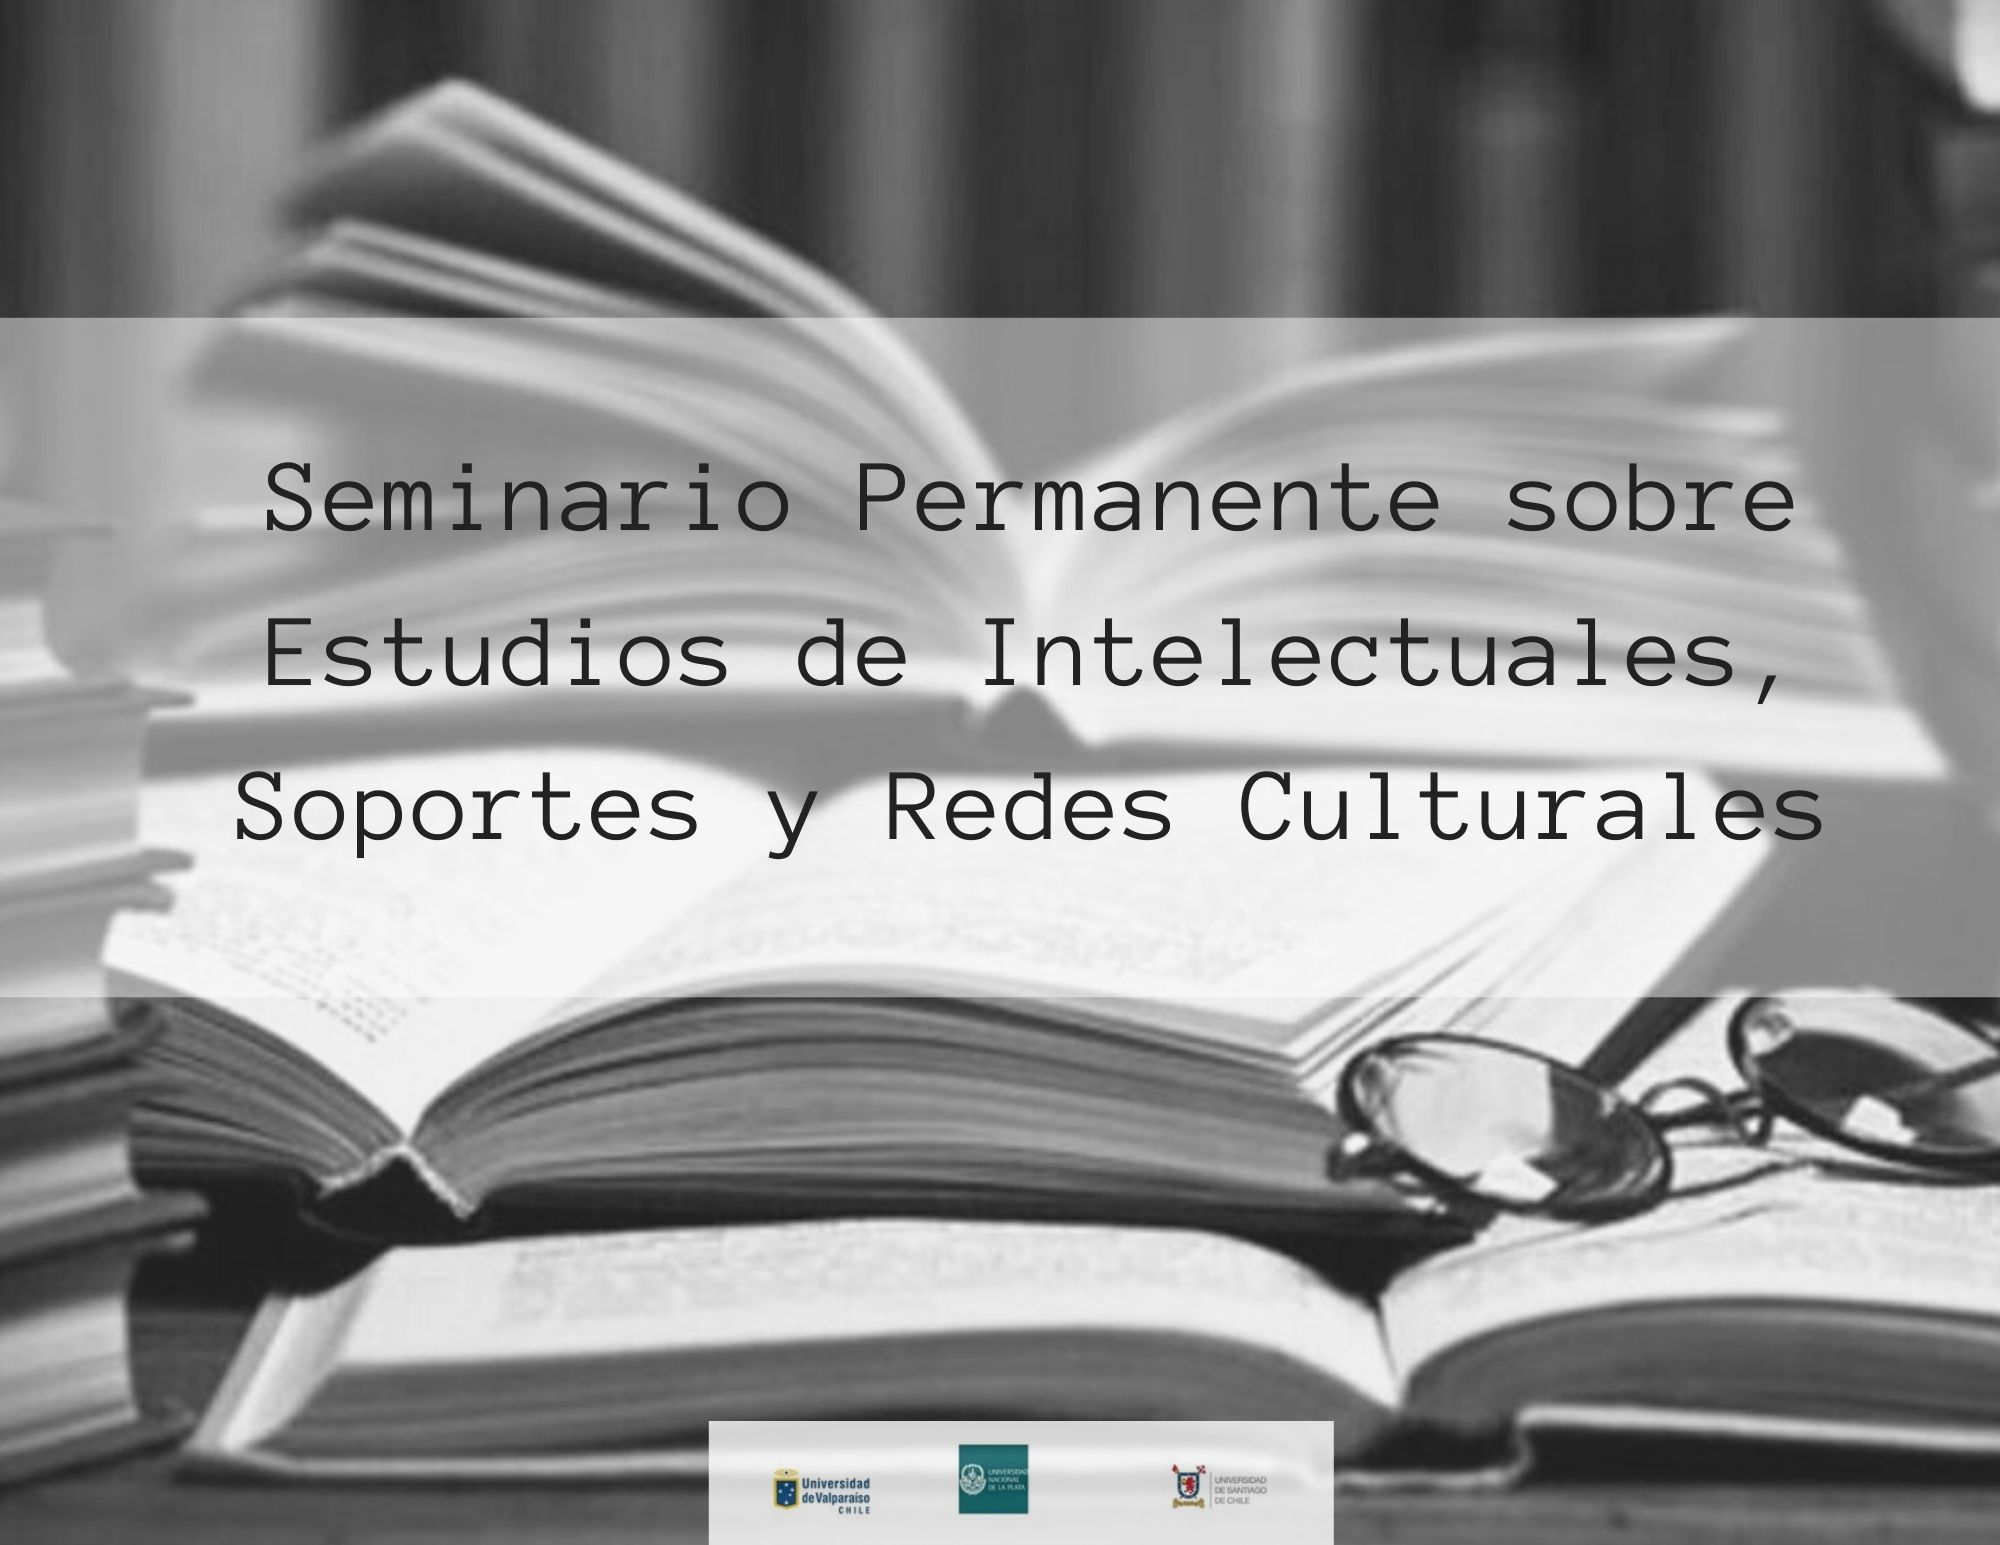 Seminario Permanente Sobre Estudios de Intelectuales, Soportes y Redes Culturales